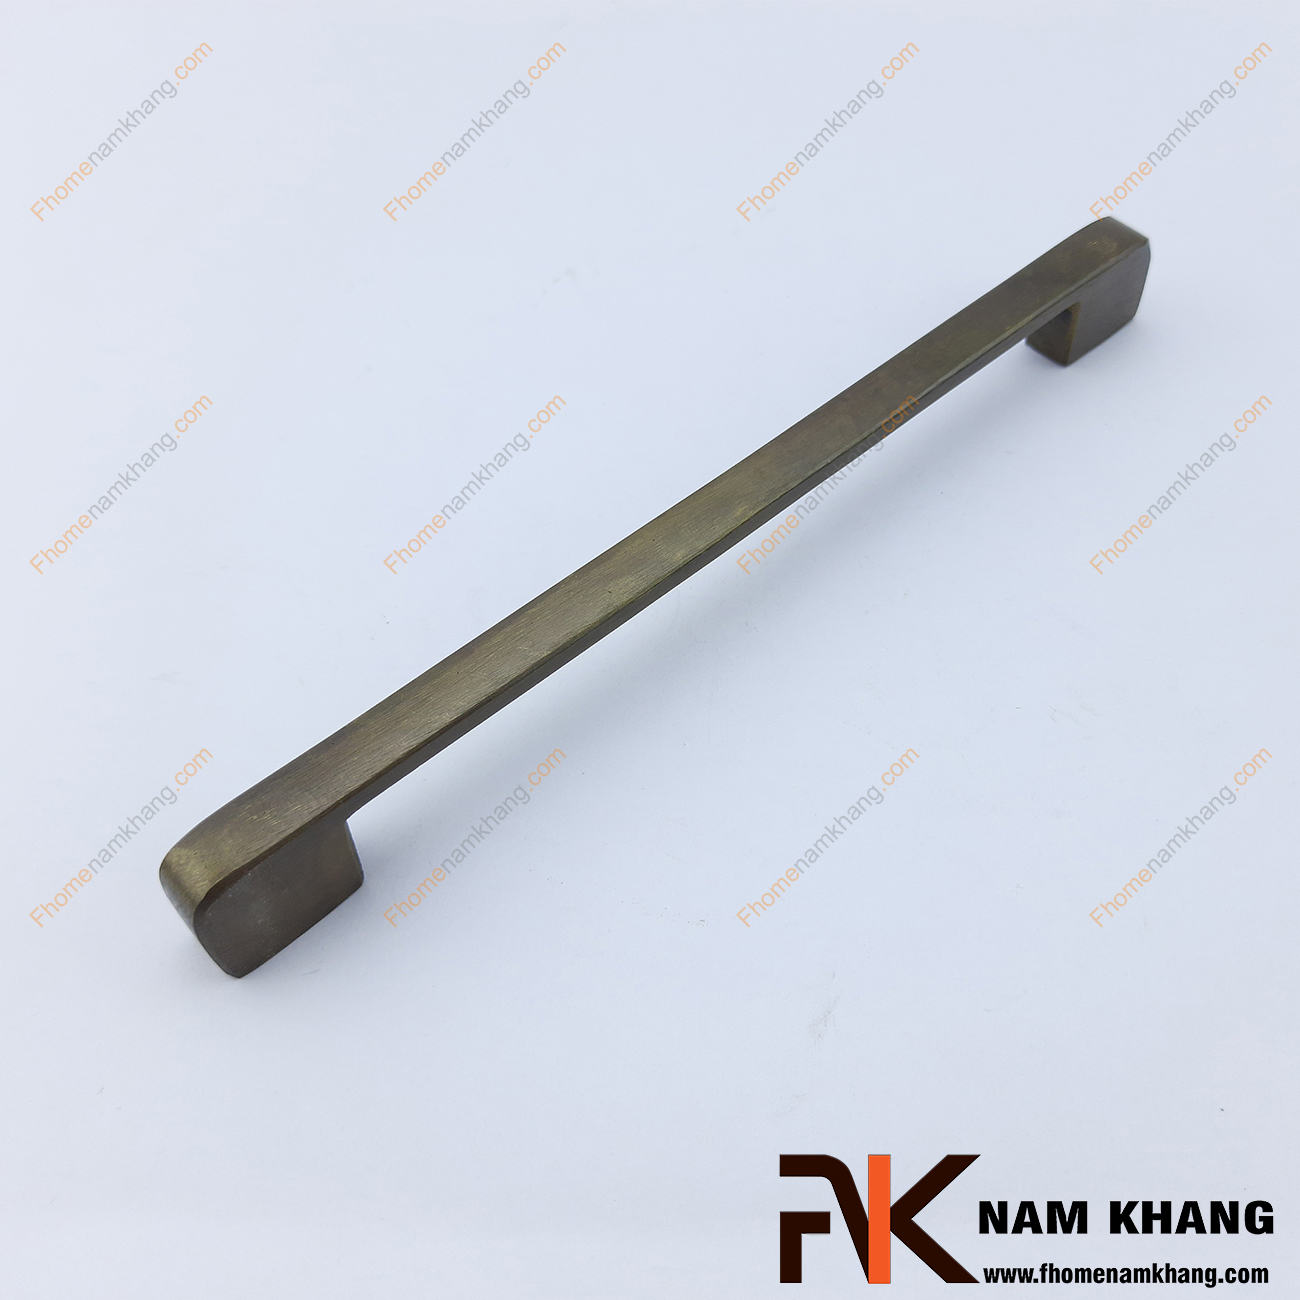 Tay nắm tủ đồng đúc xi màu giả cổ NKD101-200C là một sản phẩm đặc trưng trong dòng tay nắm nội thất được sản xuất từ chất liệu đồng cao cấp.